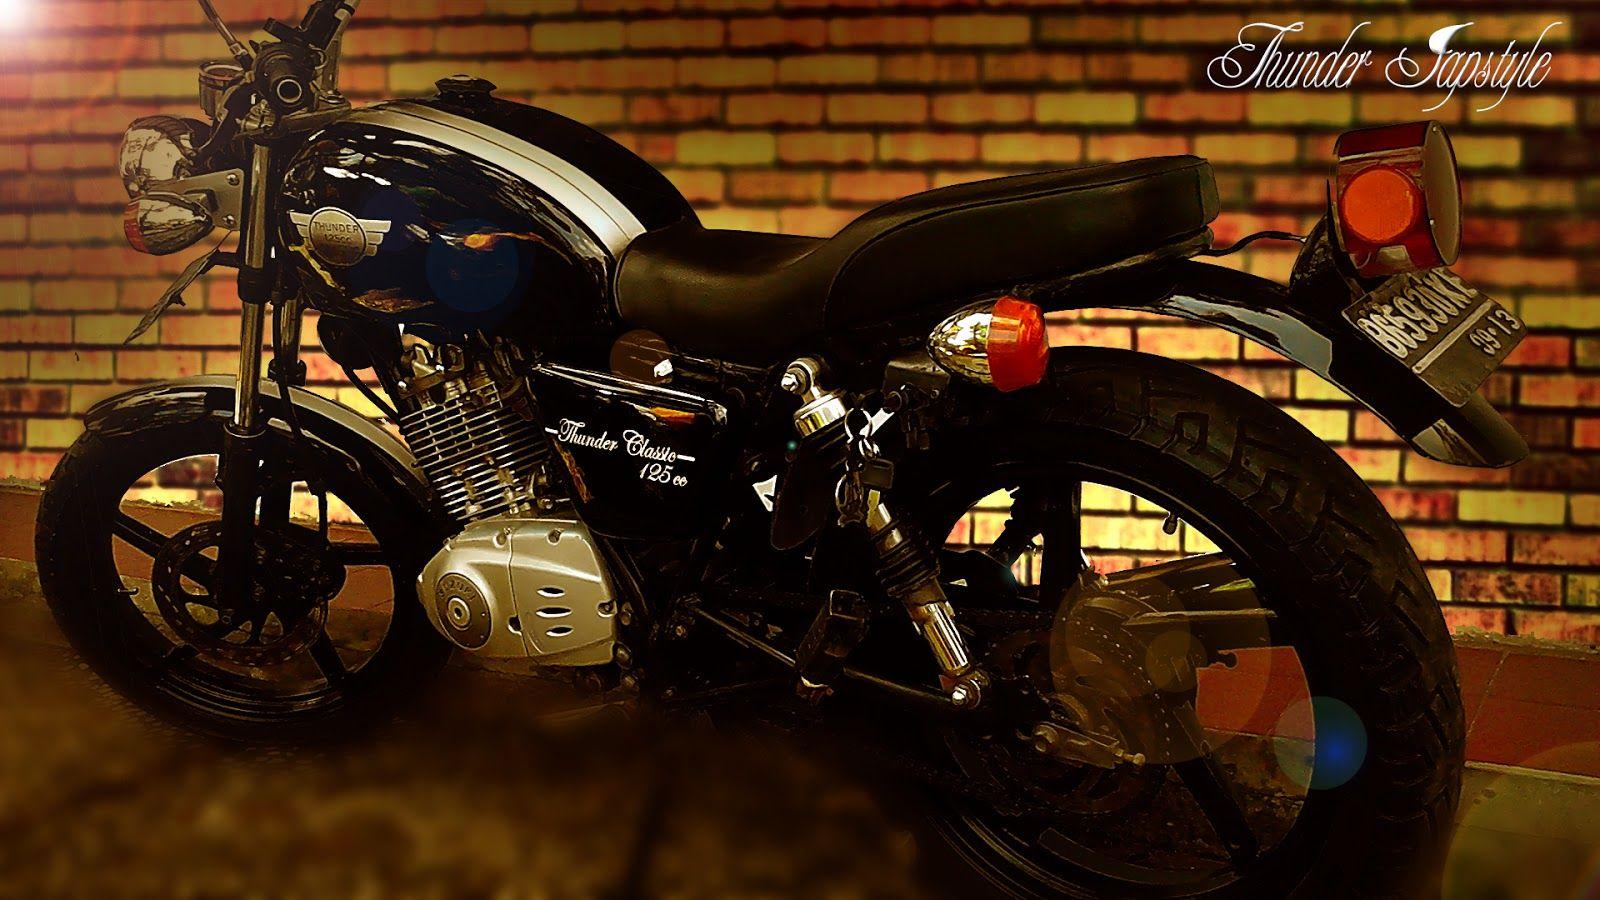 Thunder japstyle: Japstyle Thunder 125cc